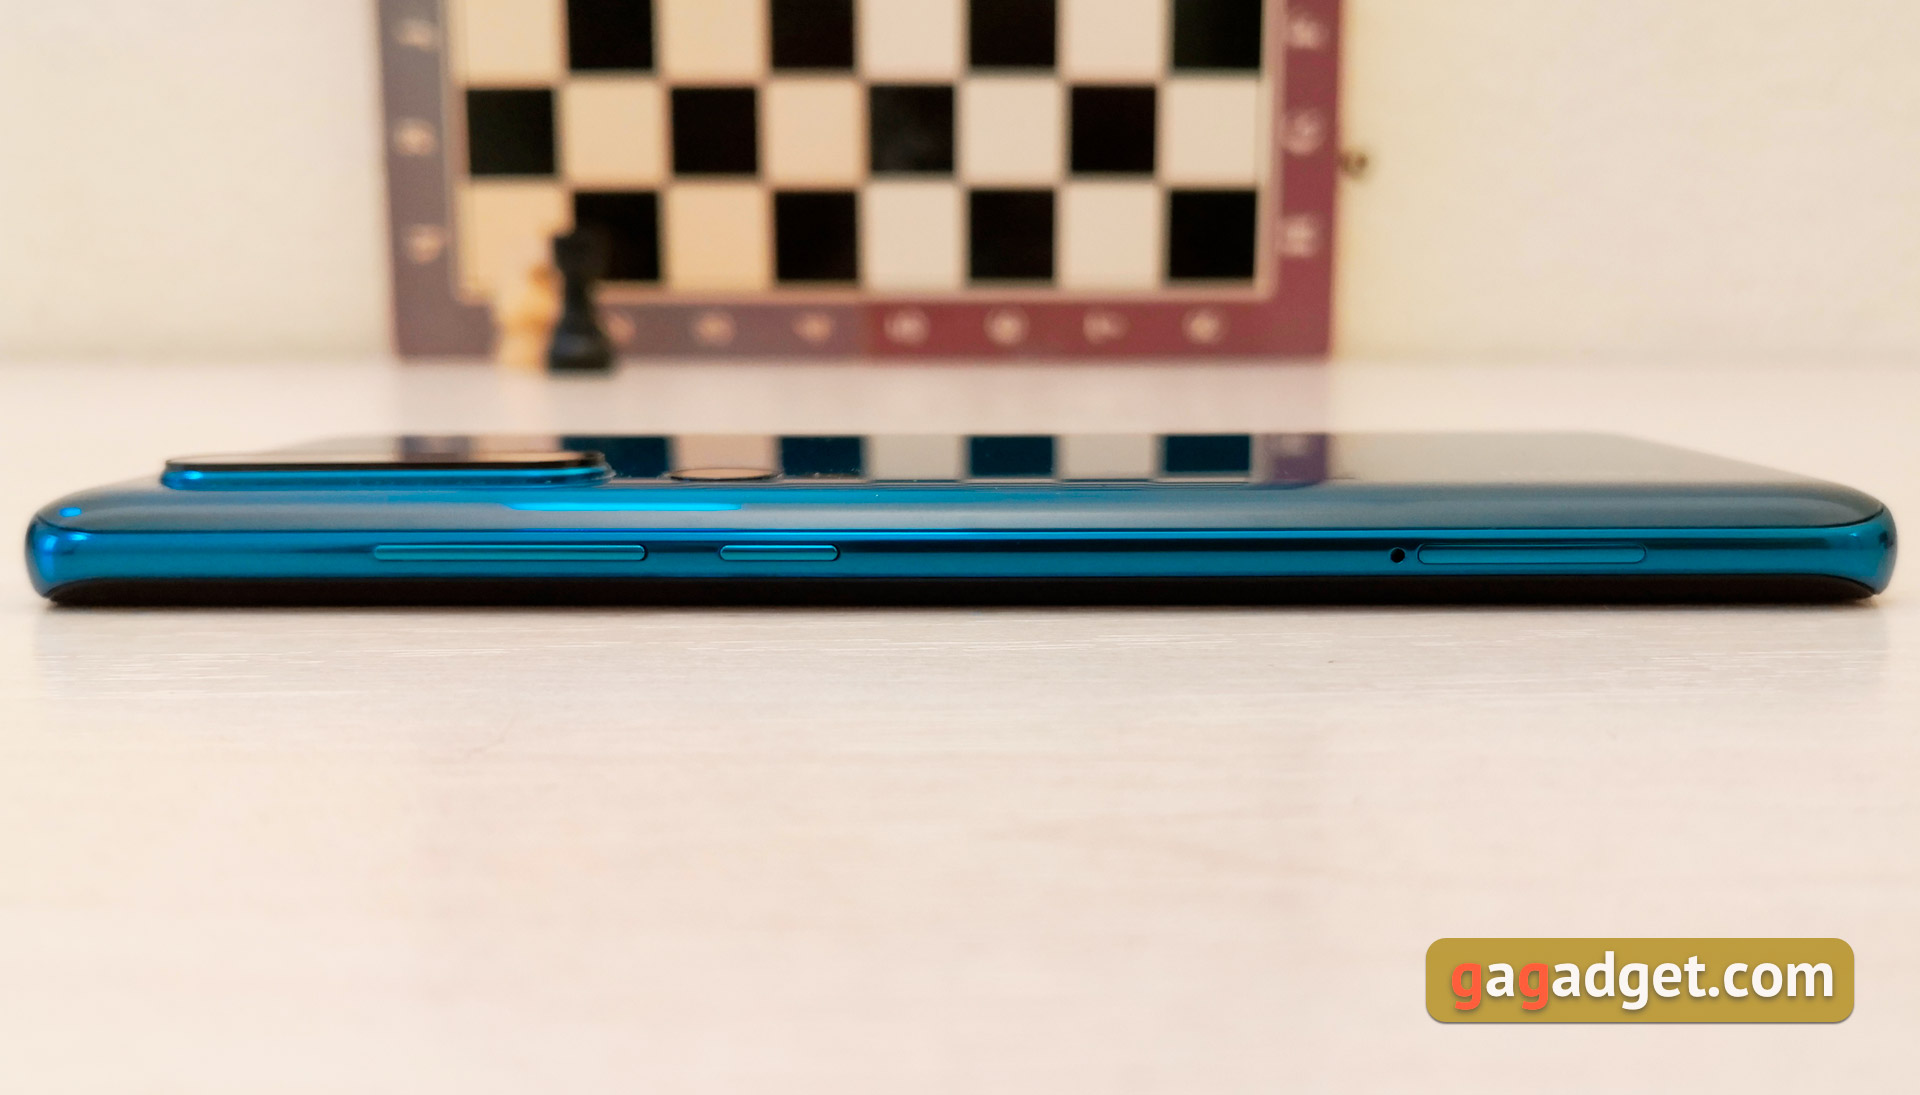 Recenzja Xiaomi Mi Note 10: pierwszy na świecie smartfon z pentakamerą o rozdzielczości 108 megapikseli-13